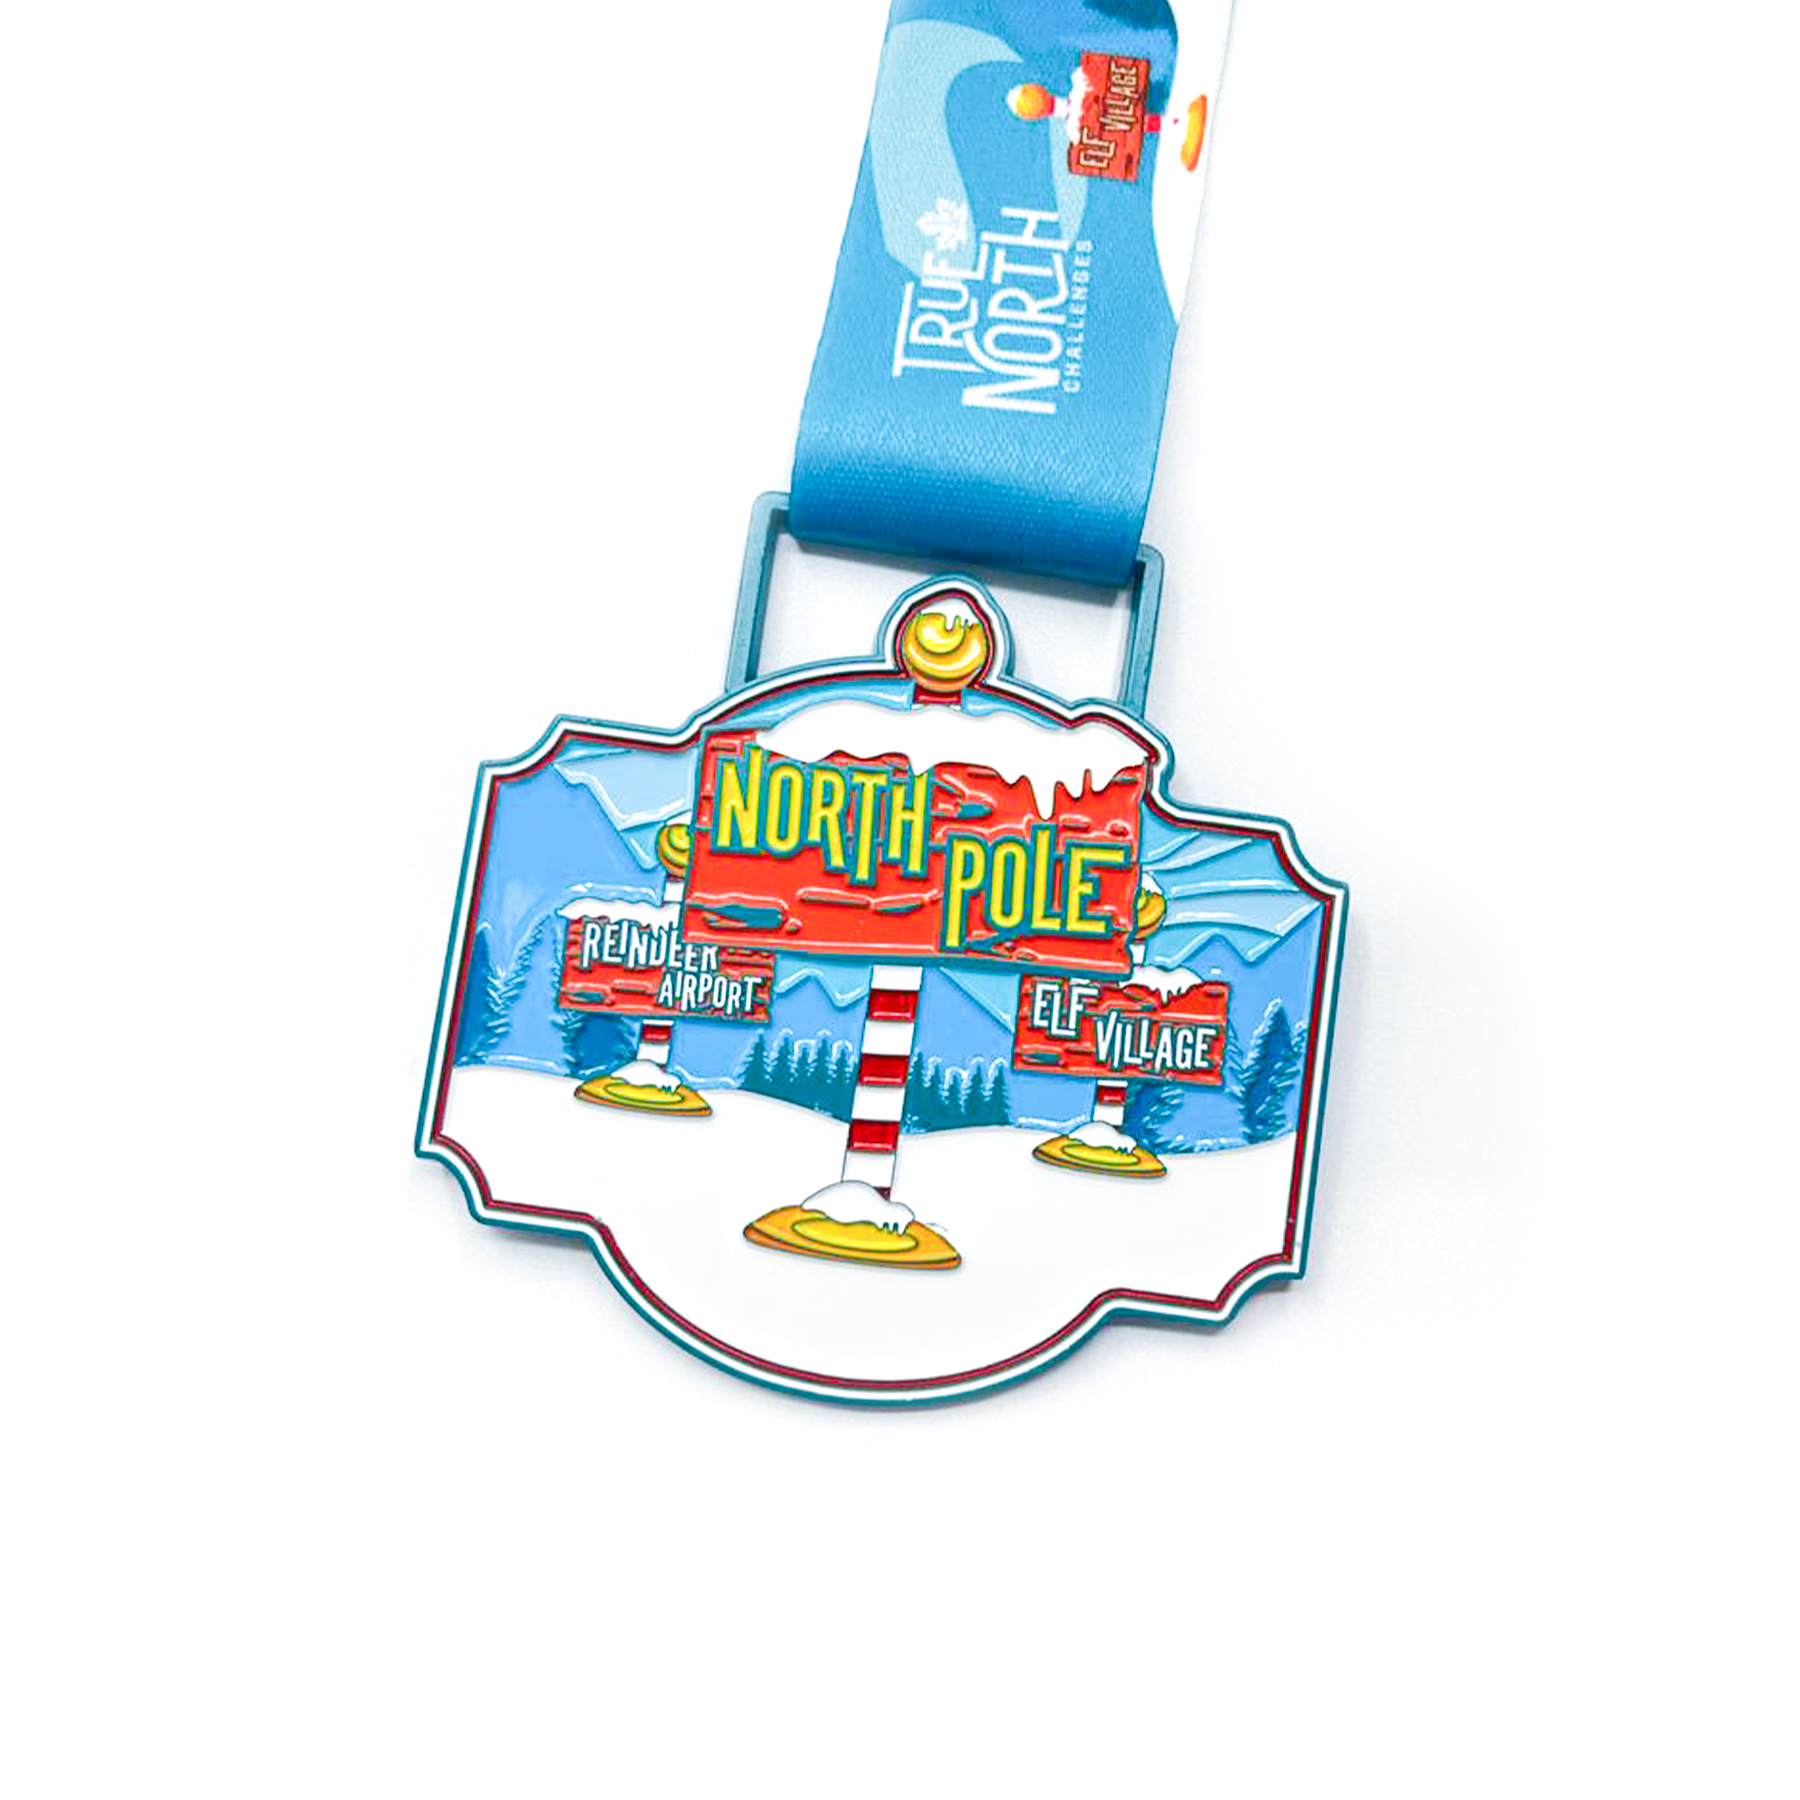 North Pole 5k Challenge - Entry + Medal